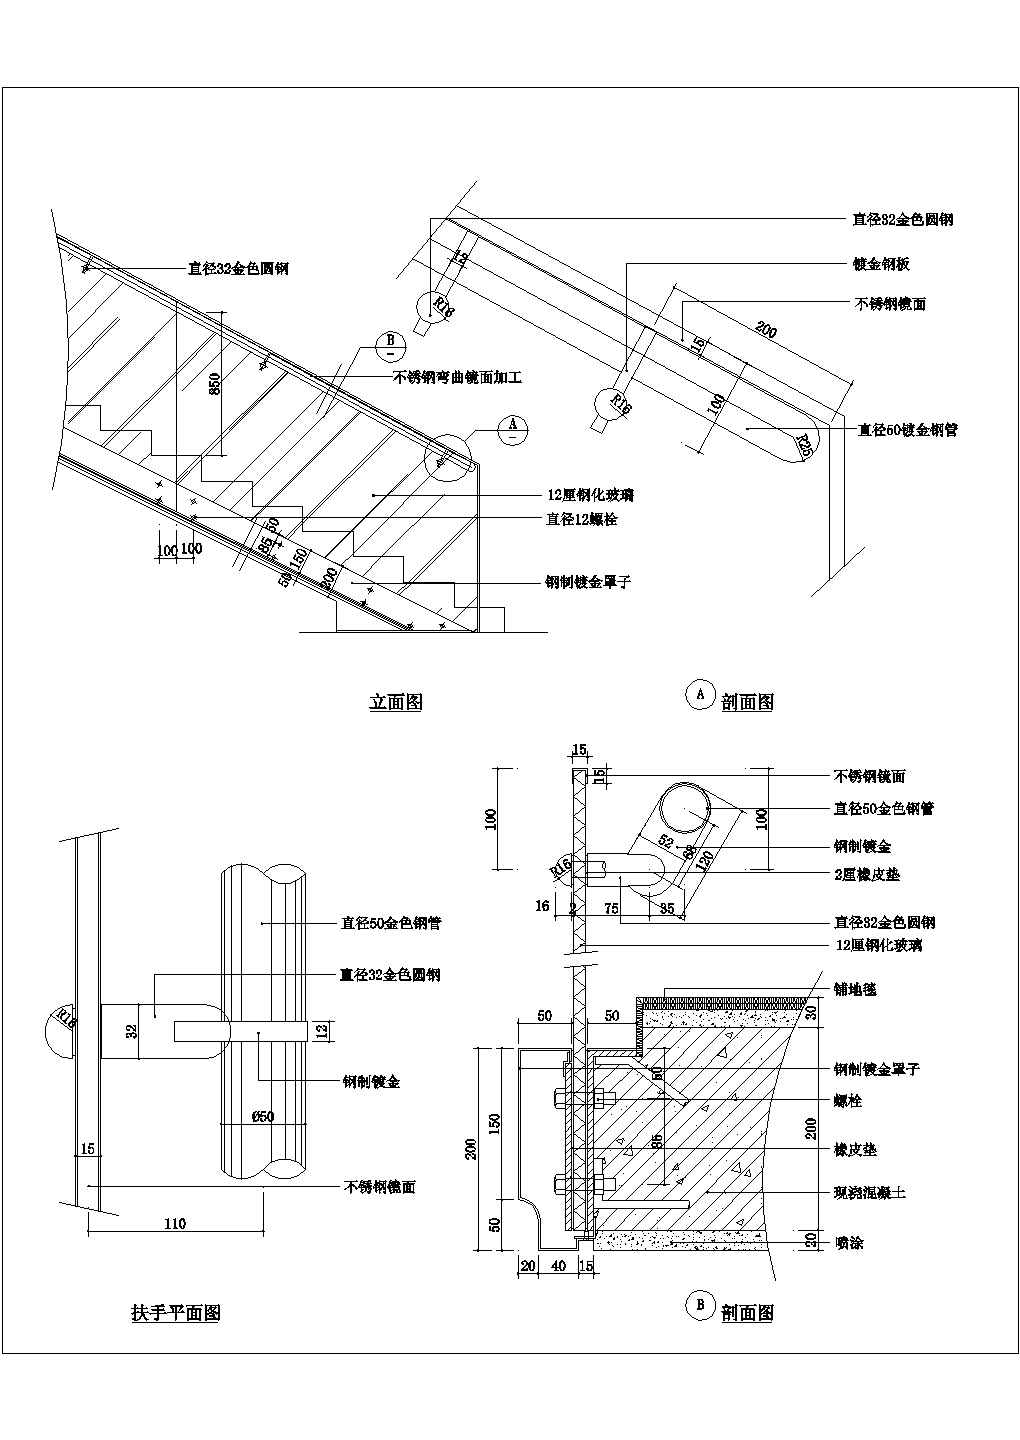 房屋楼梯设计图_房屋楼梯设计图cad图纸下载-土木在线